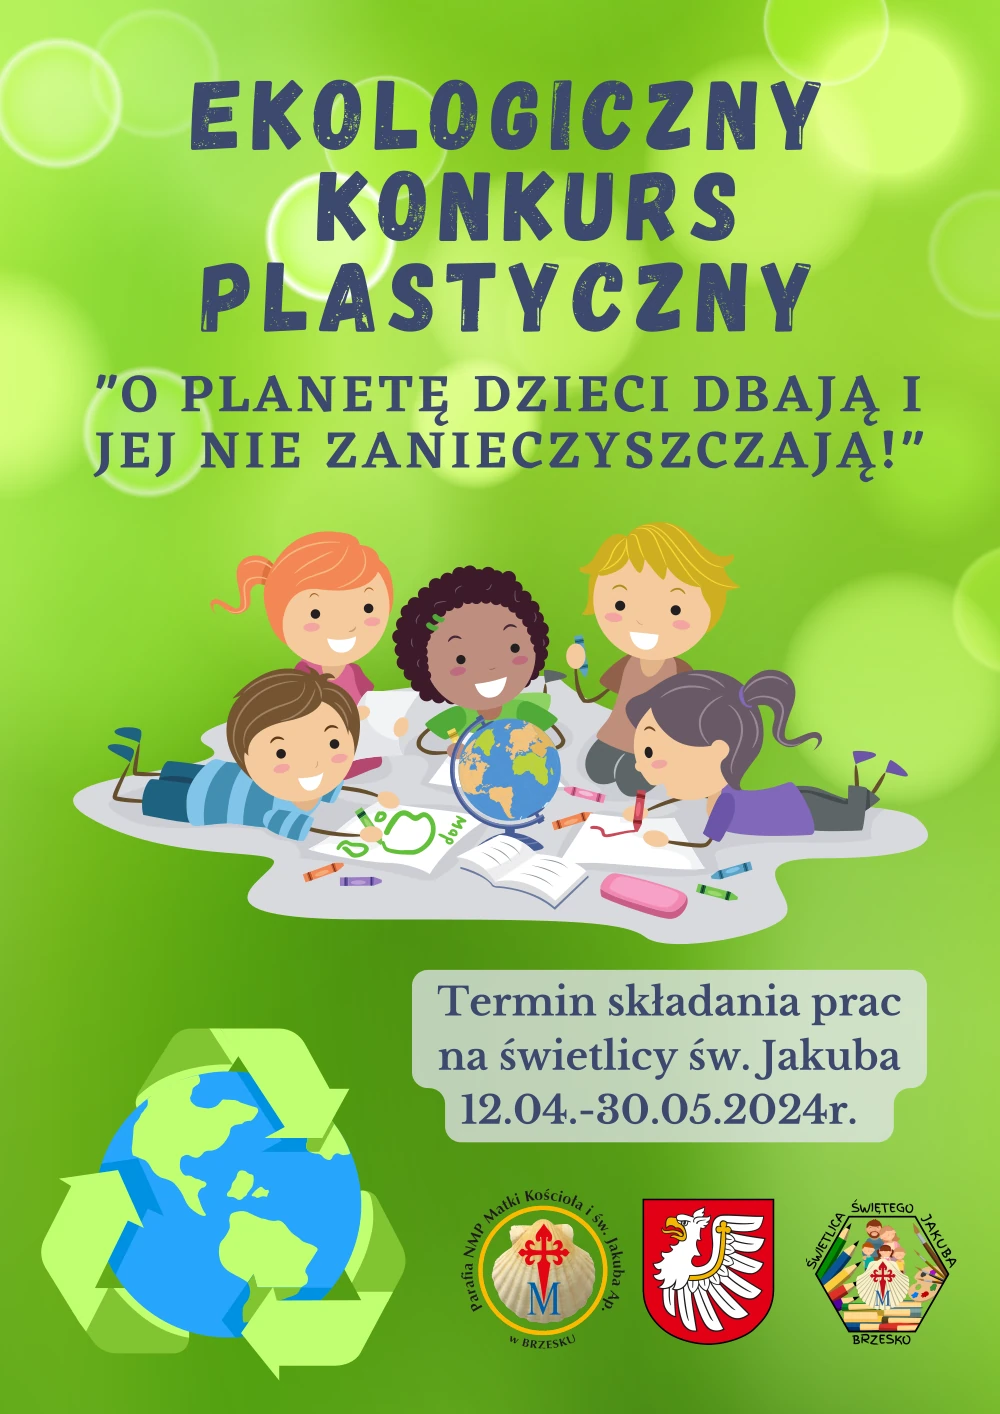 Konkurs ekologiczny plastyczny